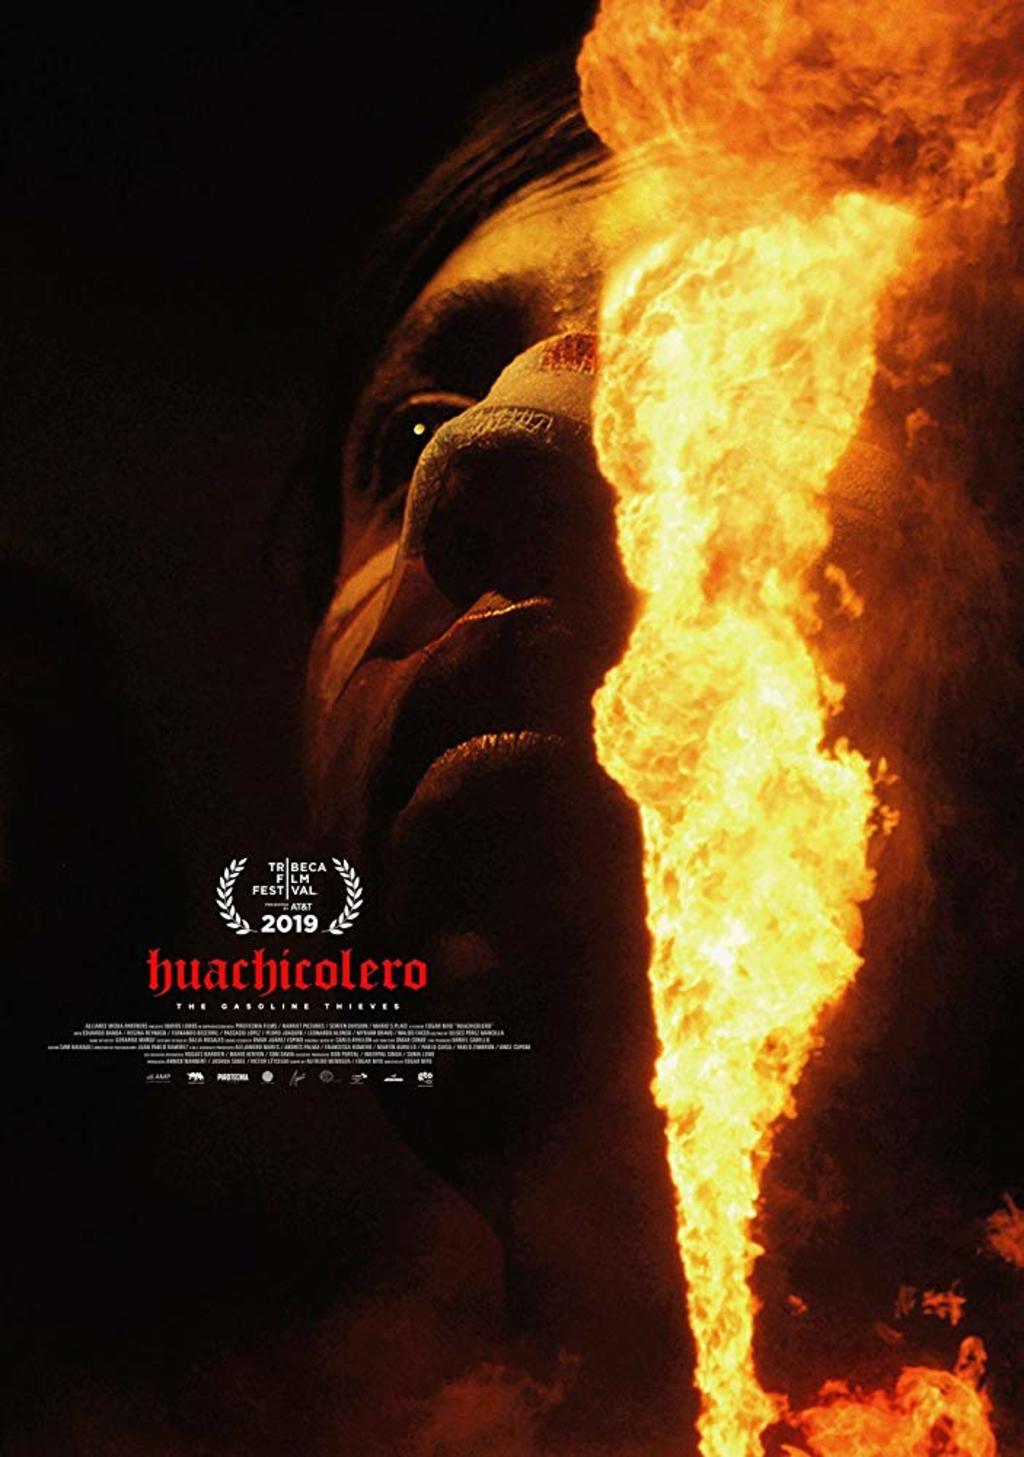 Trabajo. Huachicolero es la primera cinta del director Édgar Nito, quien se dijo emocionado de estrenarla dentro del festival.